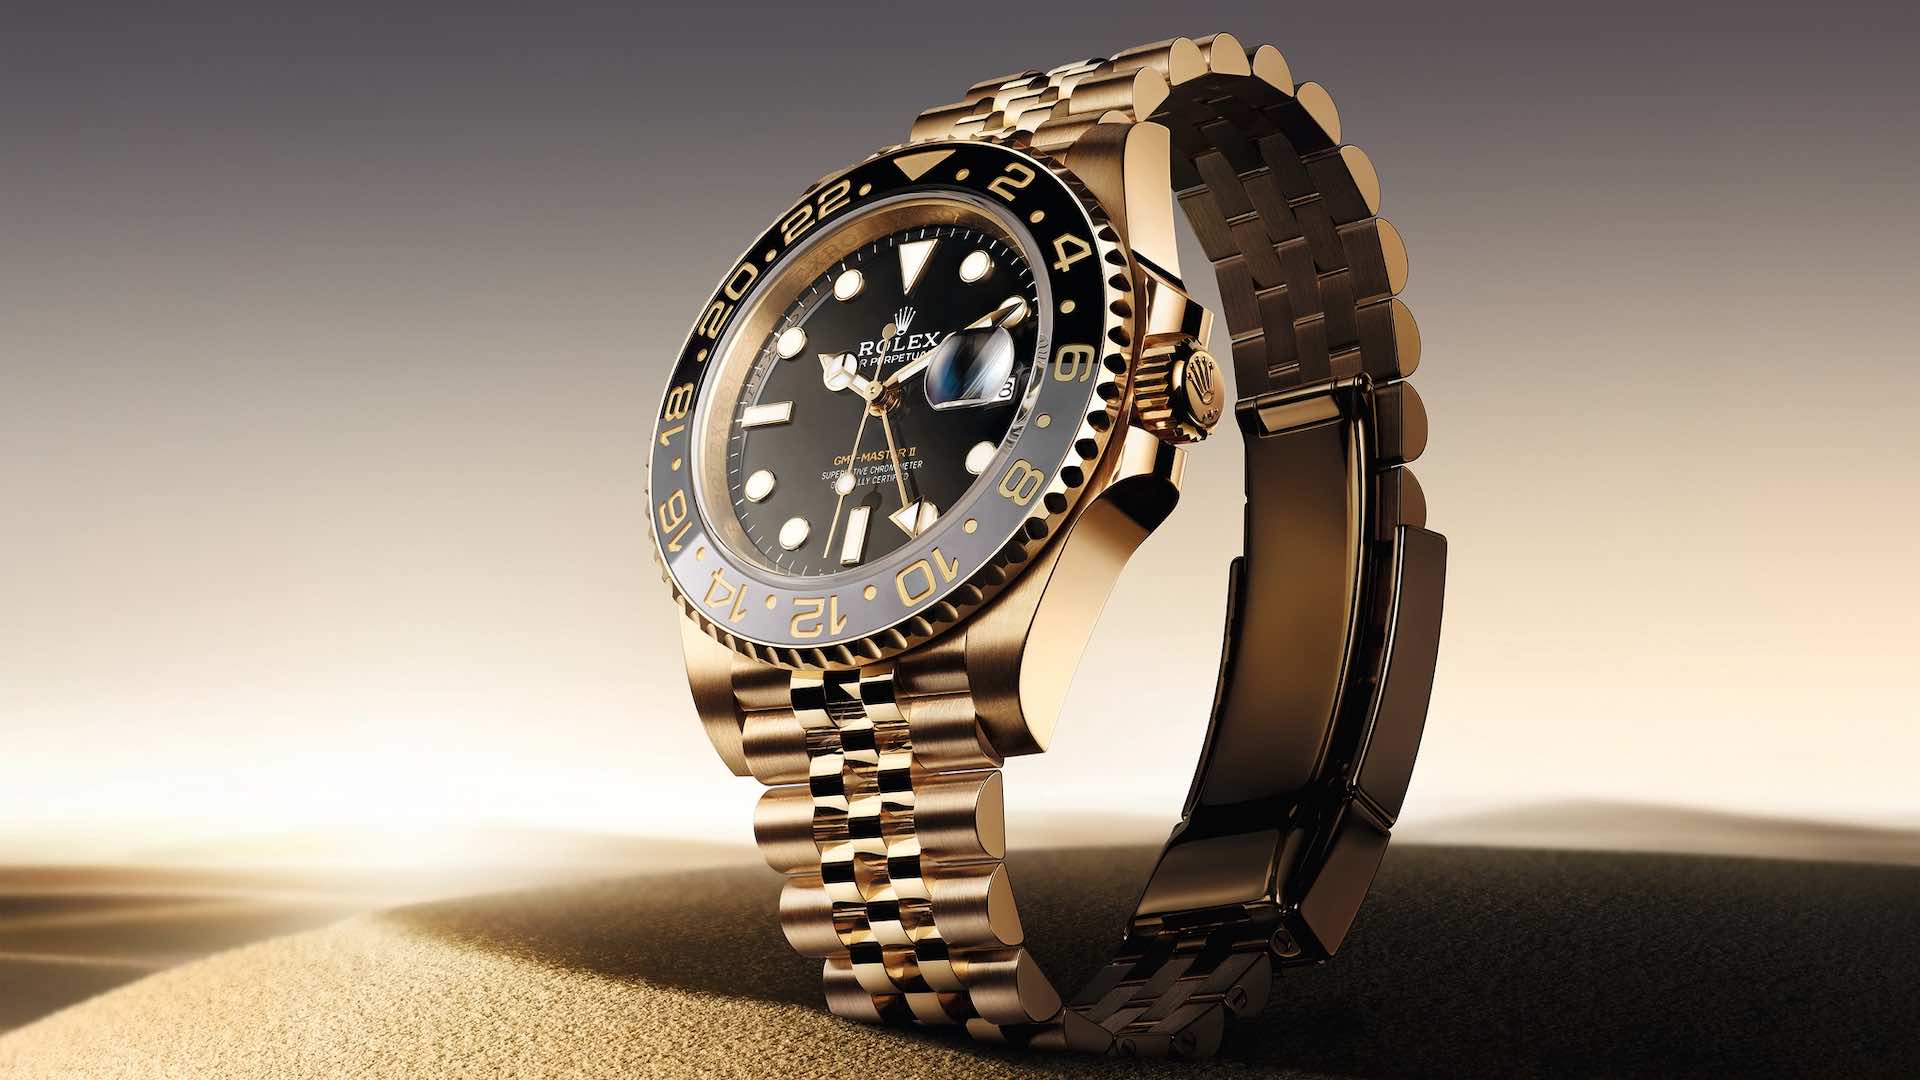 Rolex'in GMT-Master II modeliyle üstün seyahat saatinde devrim yaratıyor